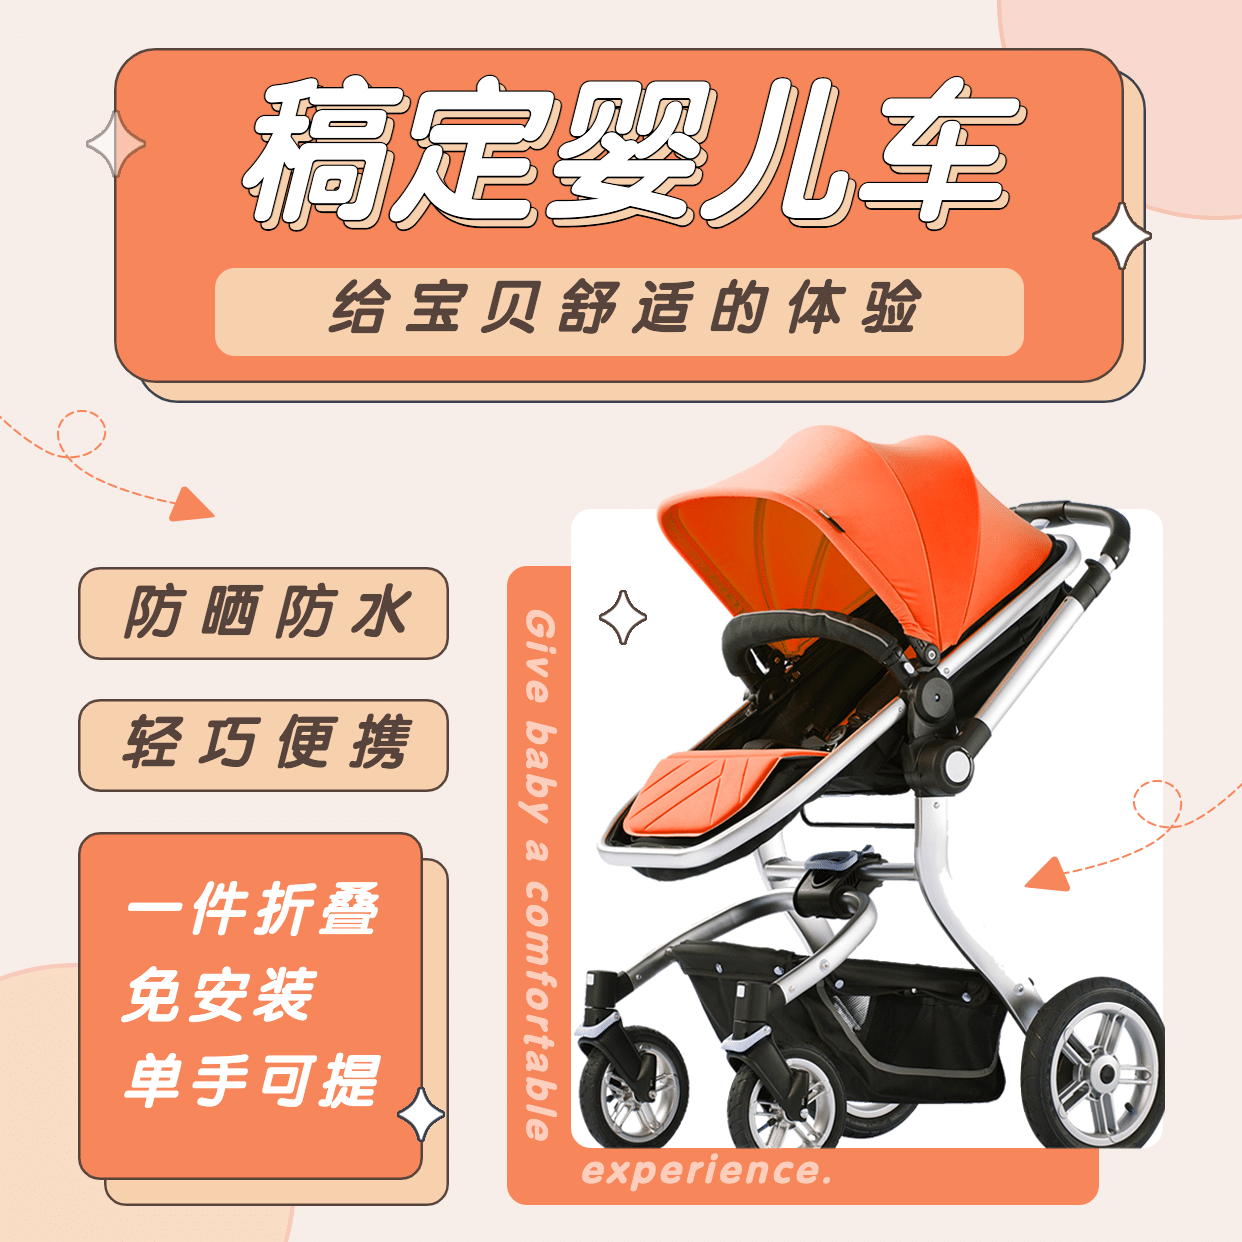 母婴亲子婴儿车营销方形海报预览效果